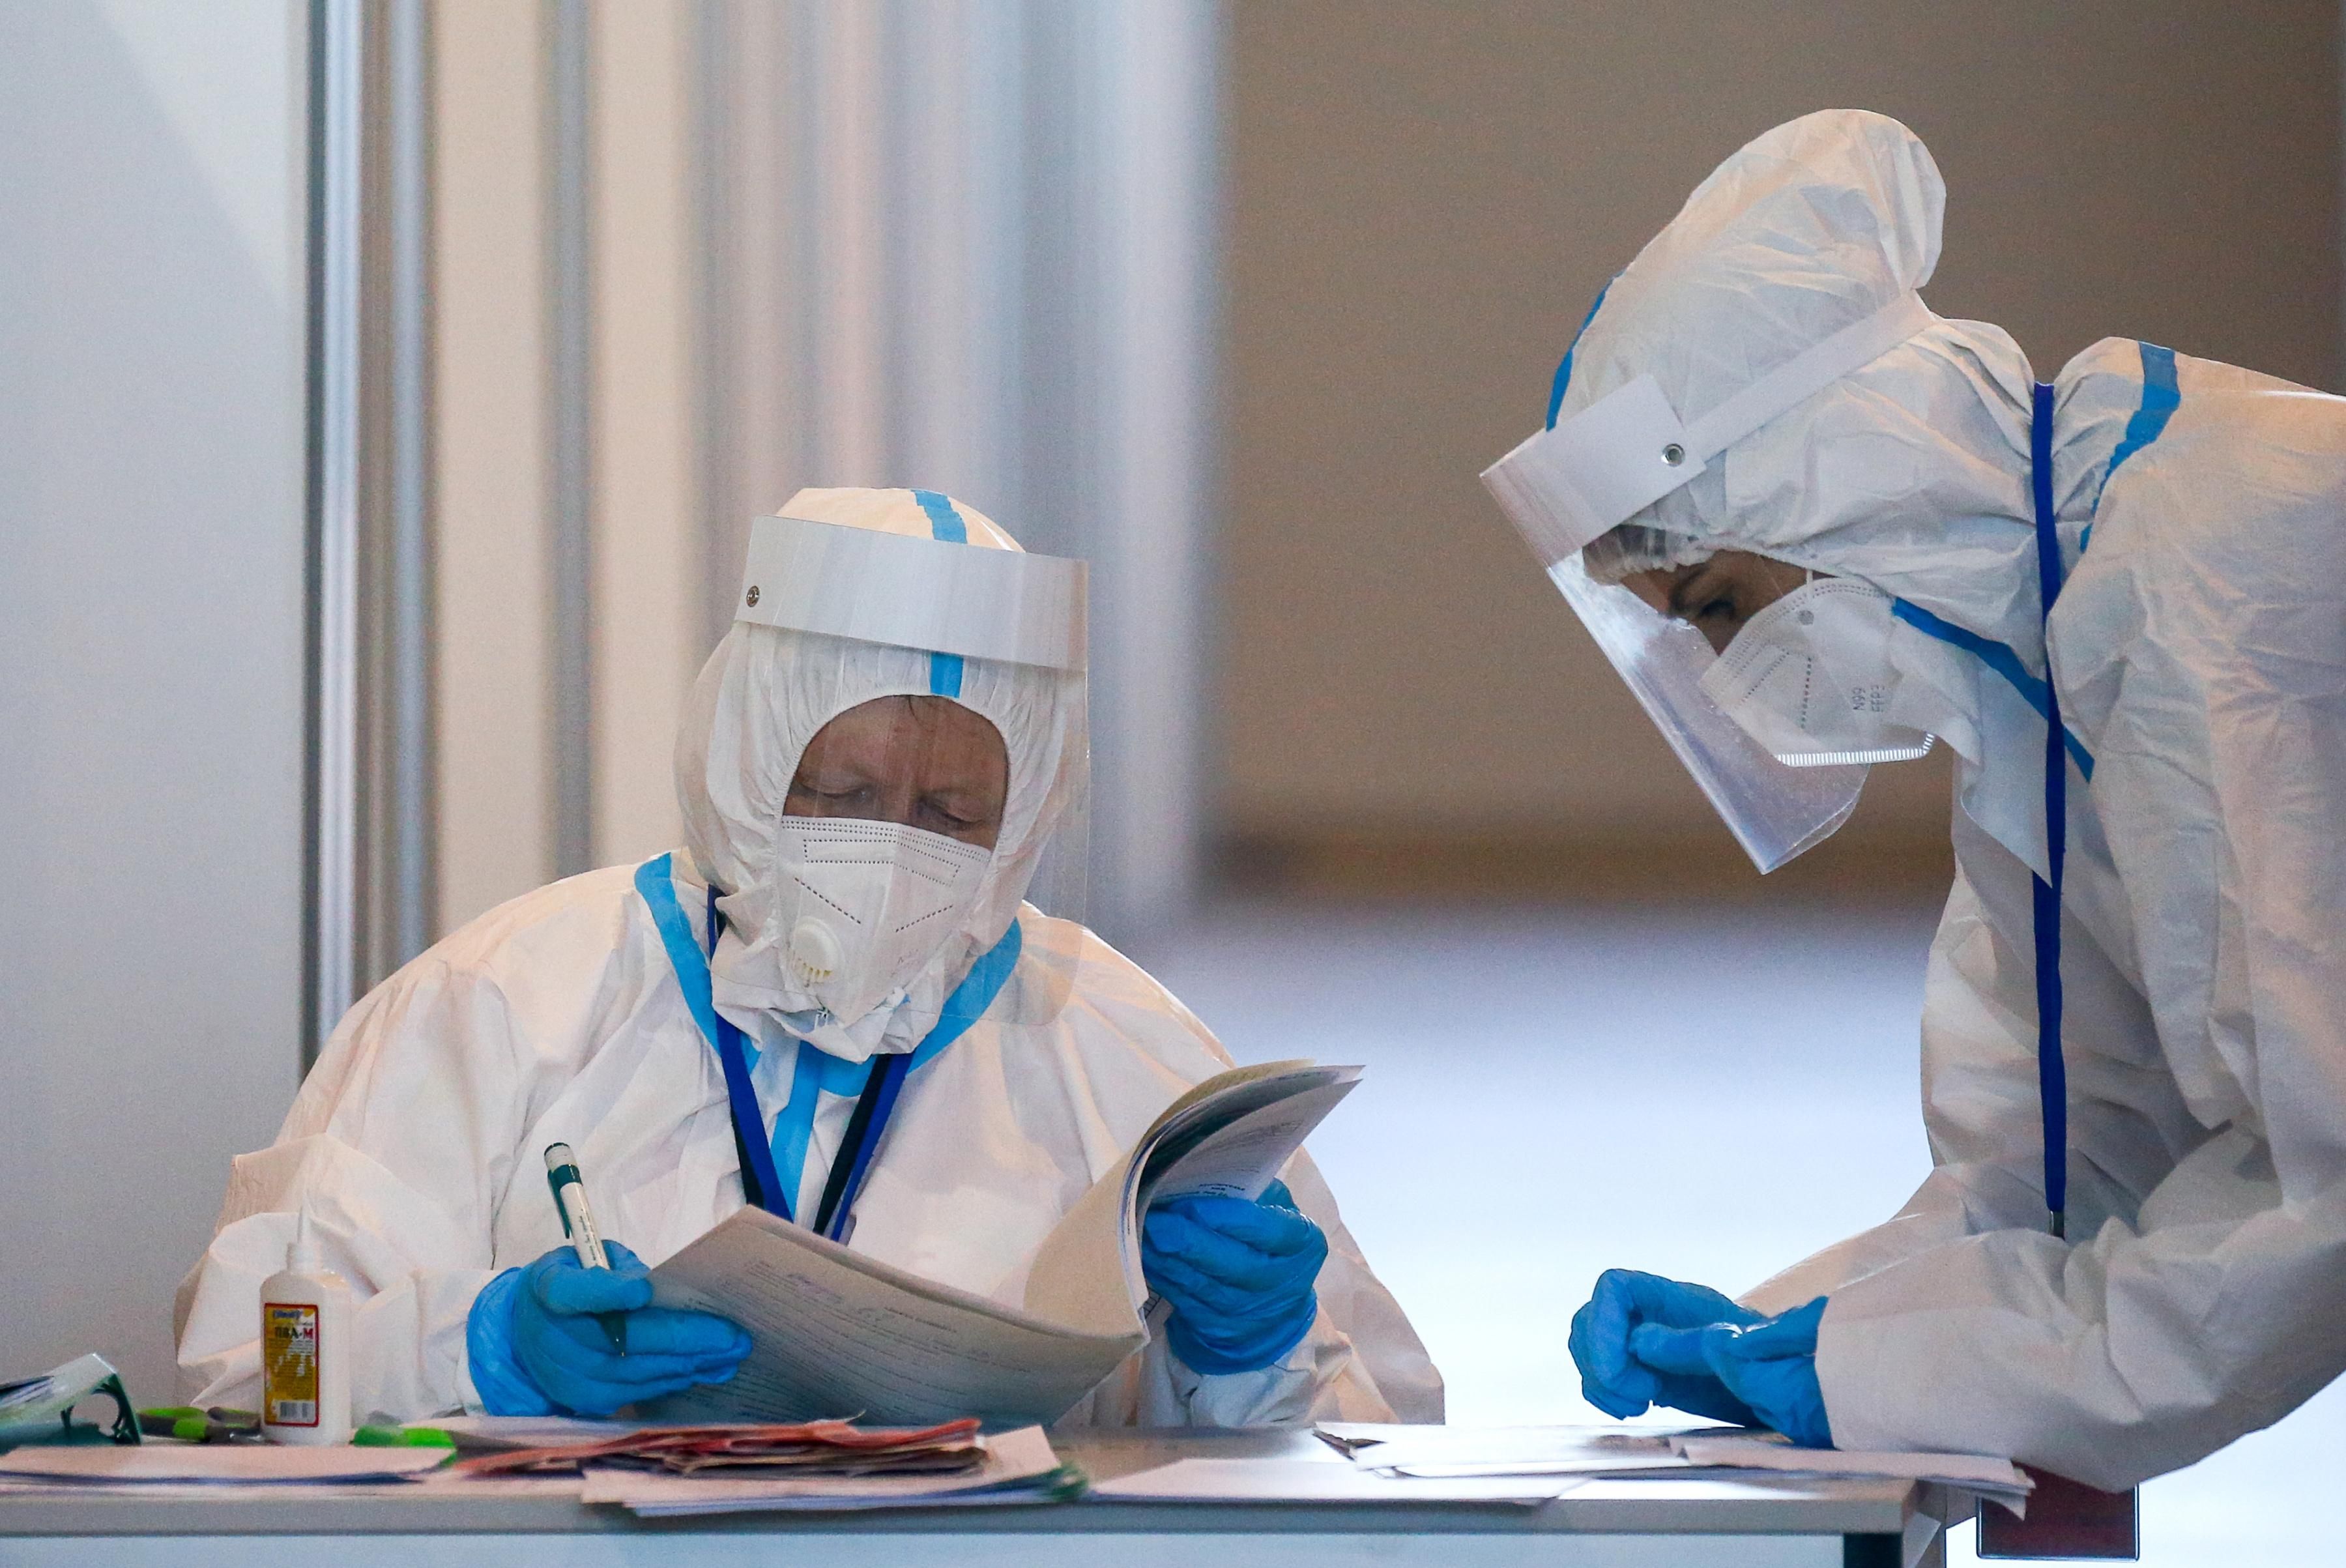 Medical workers examine paperwork